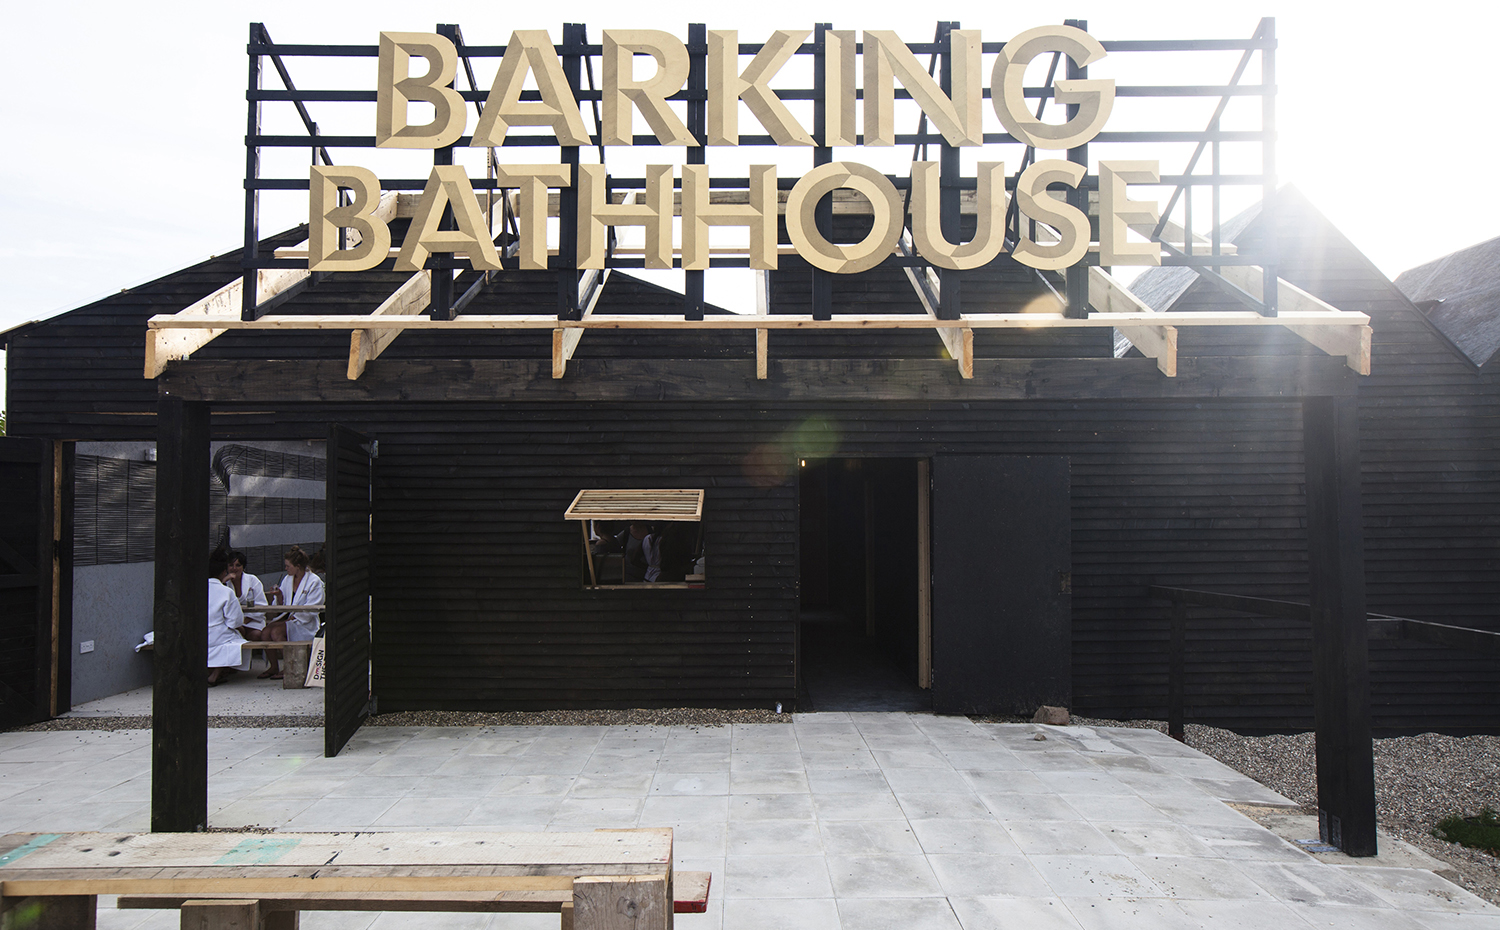 Something & Son Barking Bathhouse facade. Los baños de Barking, de Something & Son (2012), fueron una instalación temporal con motivo de los Juegos Olímpicos de Londres de 2012. Su estética rudimentaria se inspira en el pasado industrial y pesquero de la zona